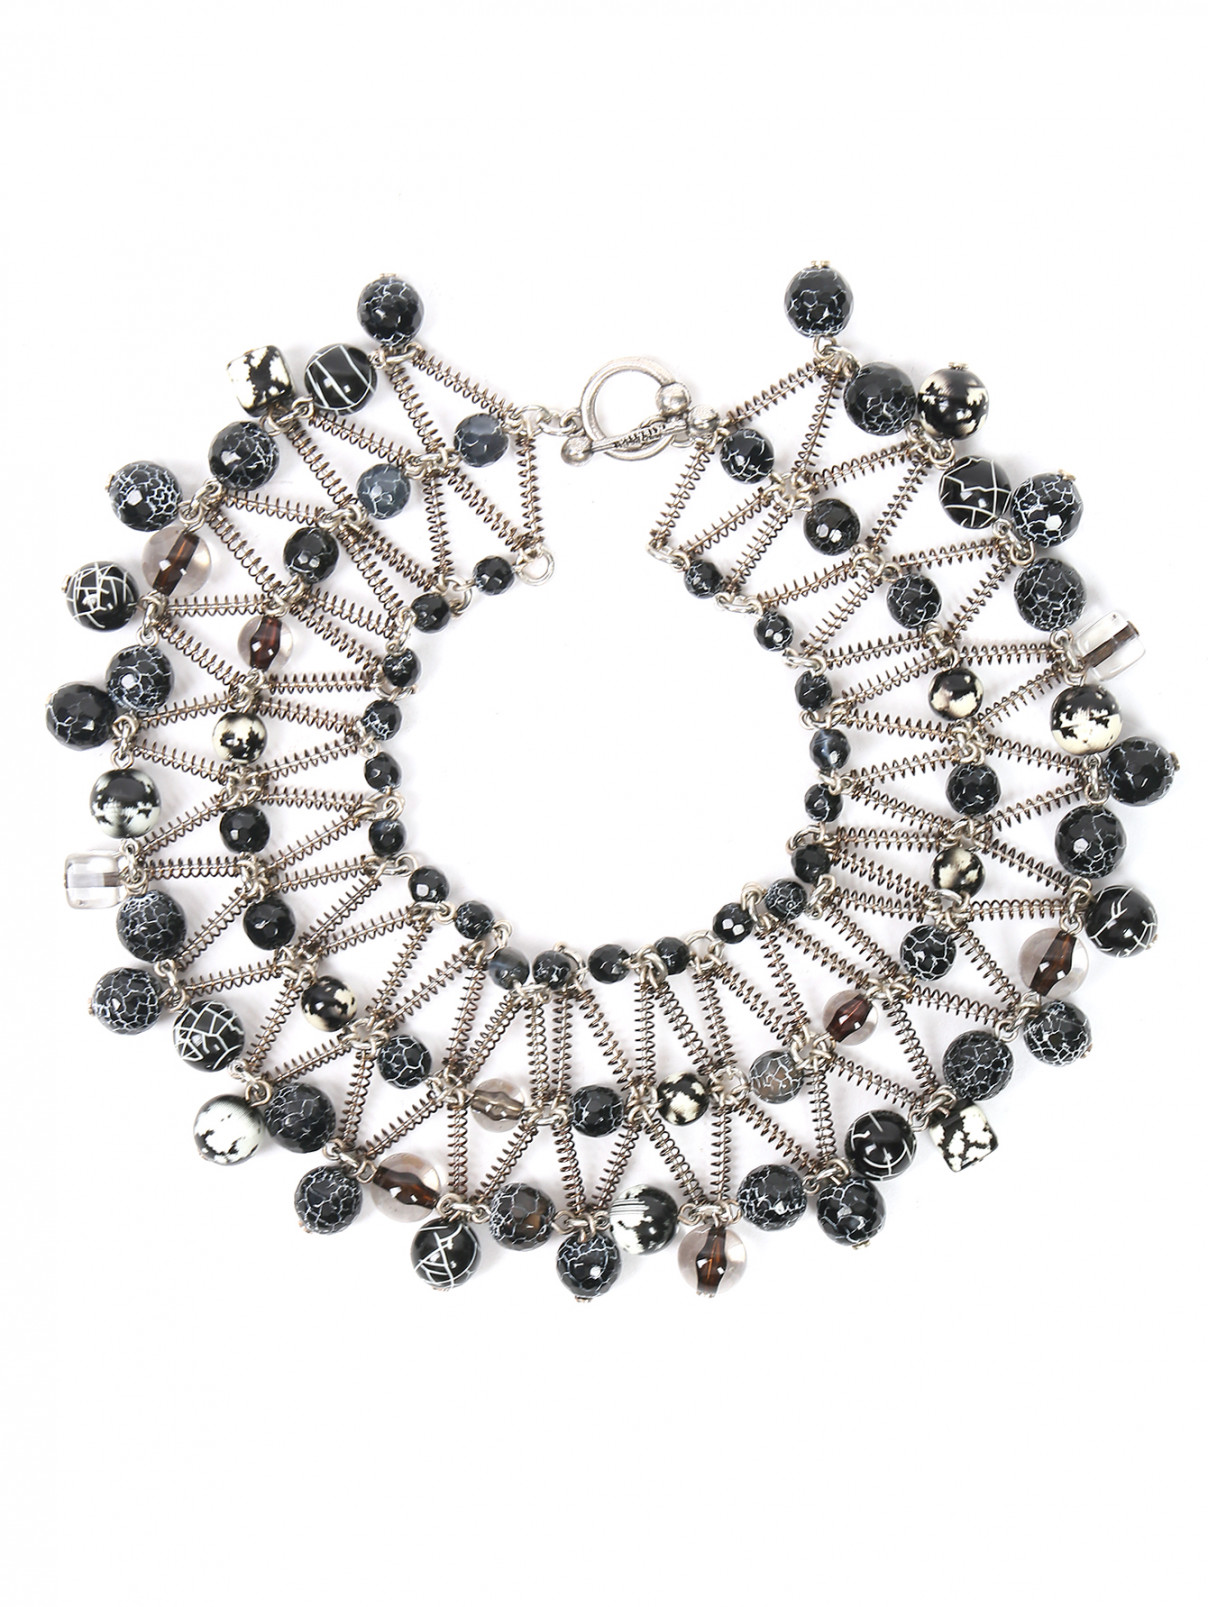 Ожерелье из металла и пластика Jean Paul Gaultier  –  Общий вид  – Цвет:  Серый